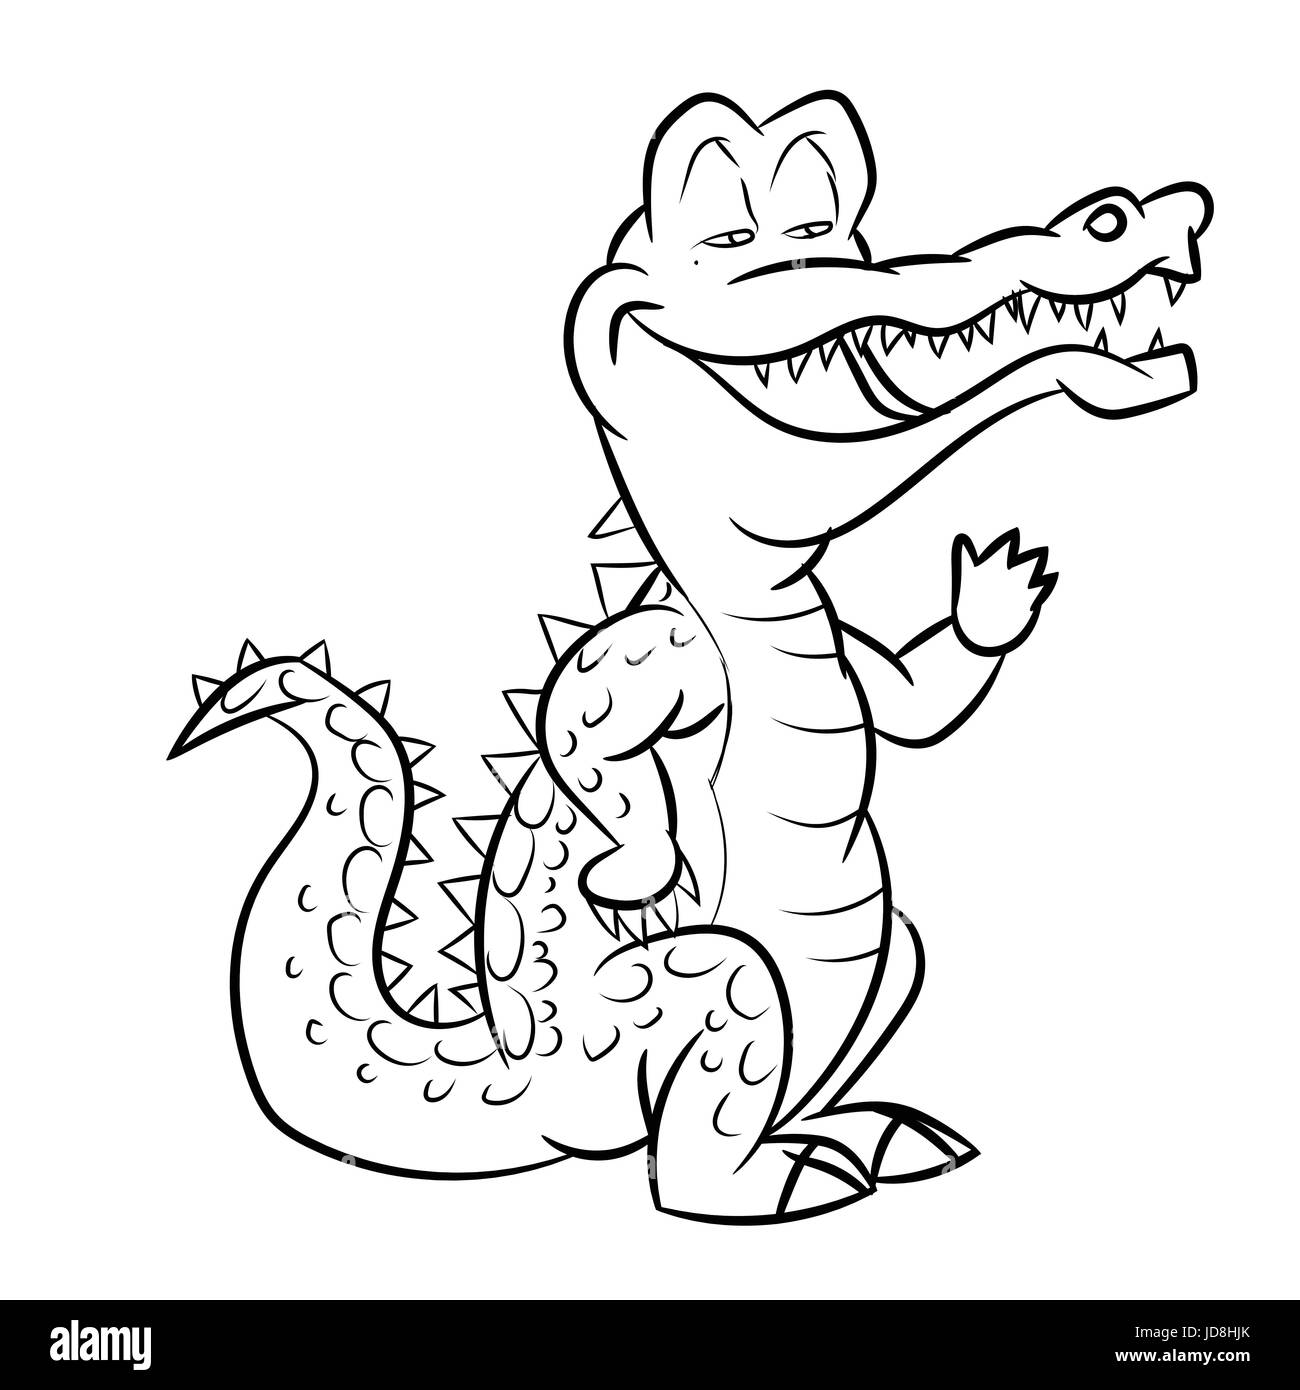 Noir et Blanc Alligator Cartoon Vector Illustration pour livre de coloriage - Ligne dessinée Vector Illustration de Vecteur